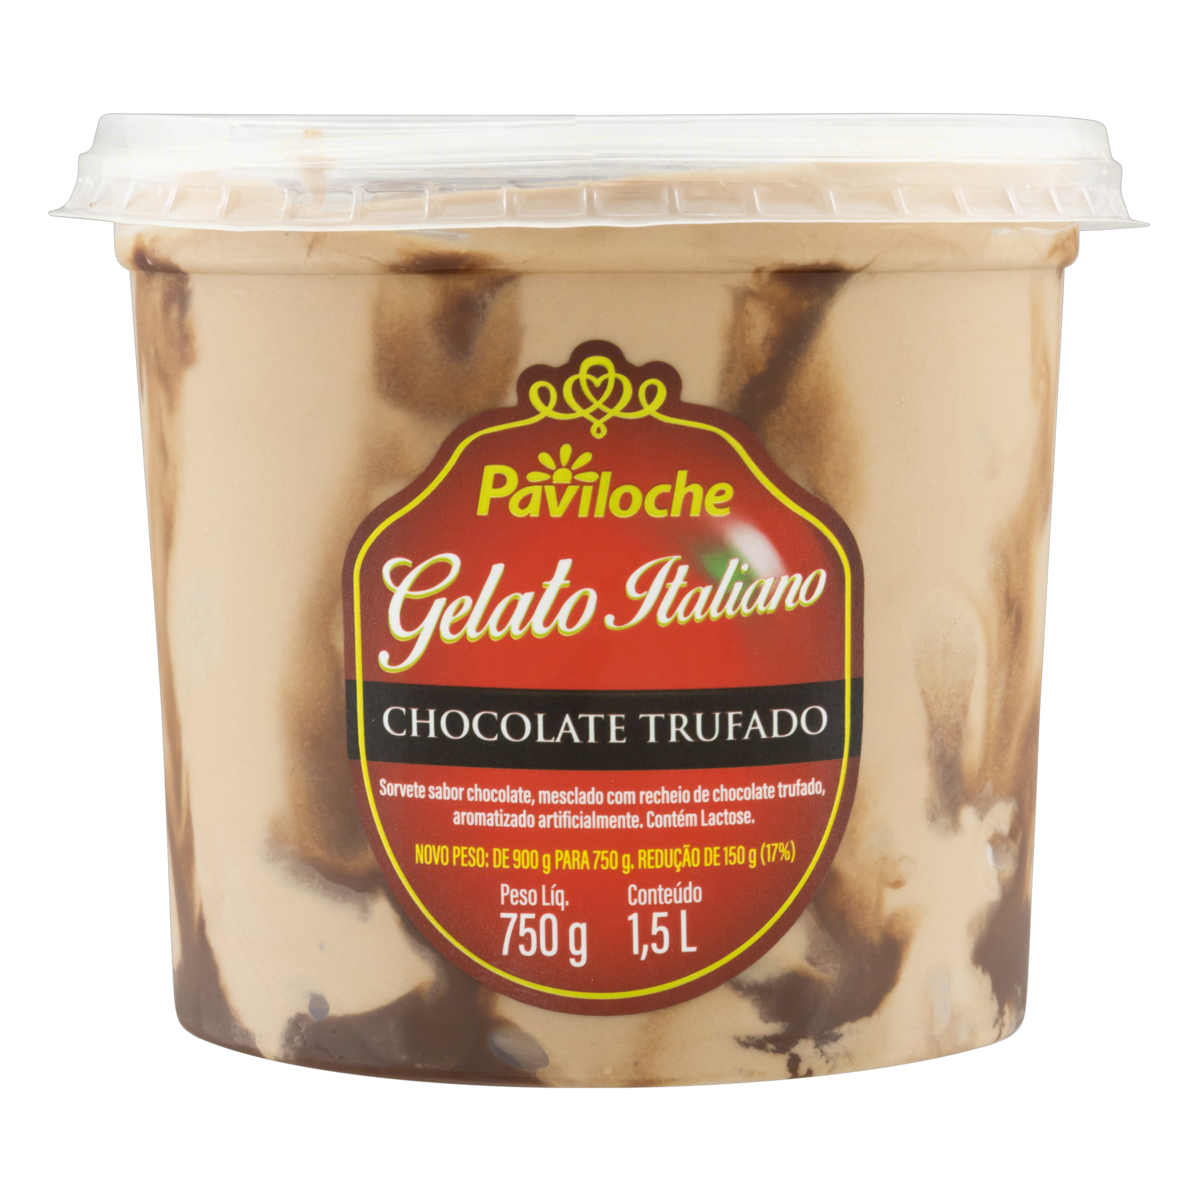 7897763510739 - GELATO ITALIANO CHOCOLATE TRUFADO PAVILOCHE POTE 1,5L